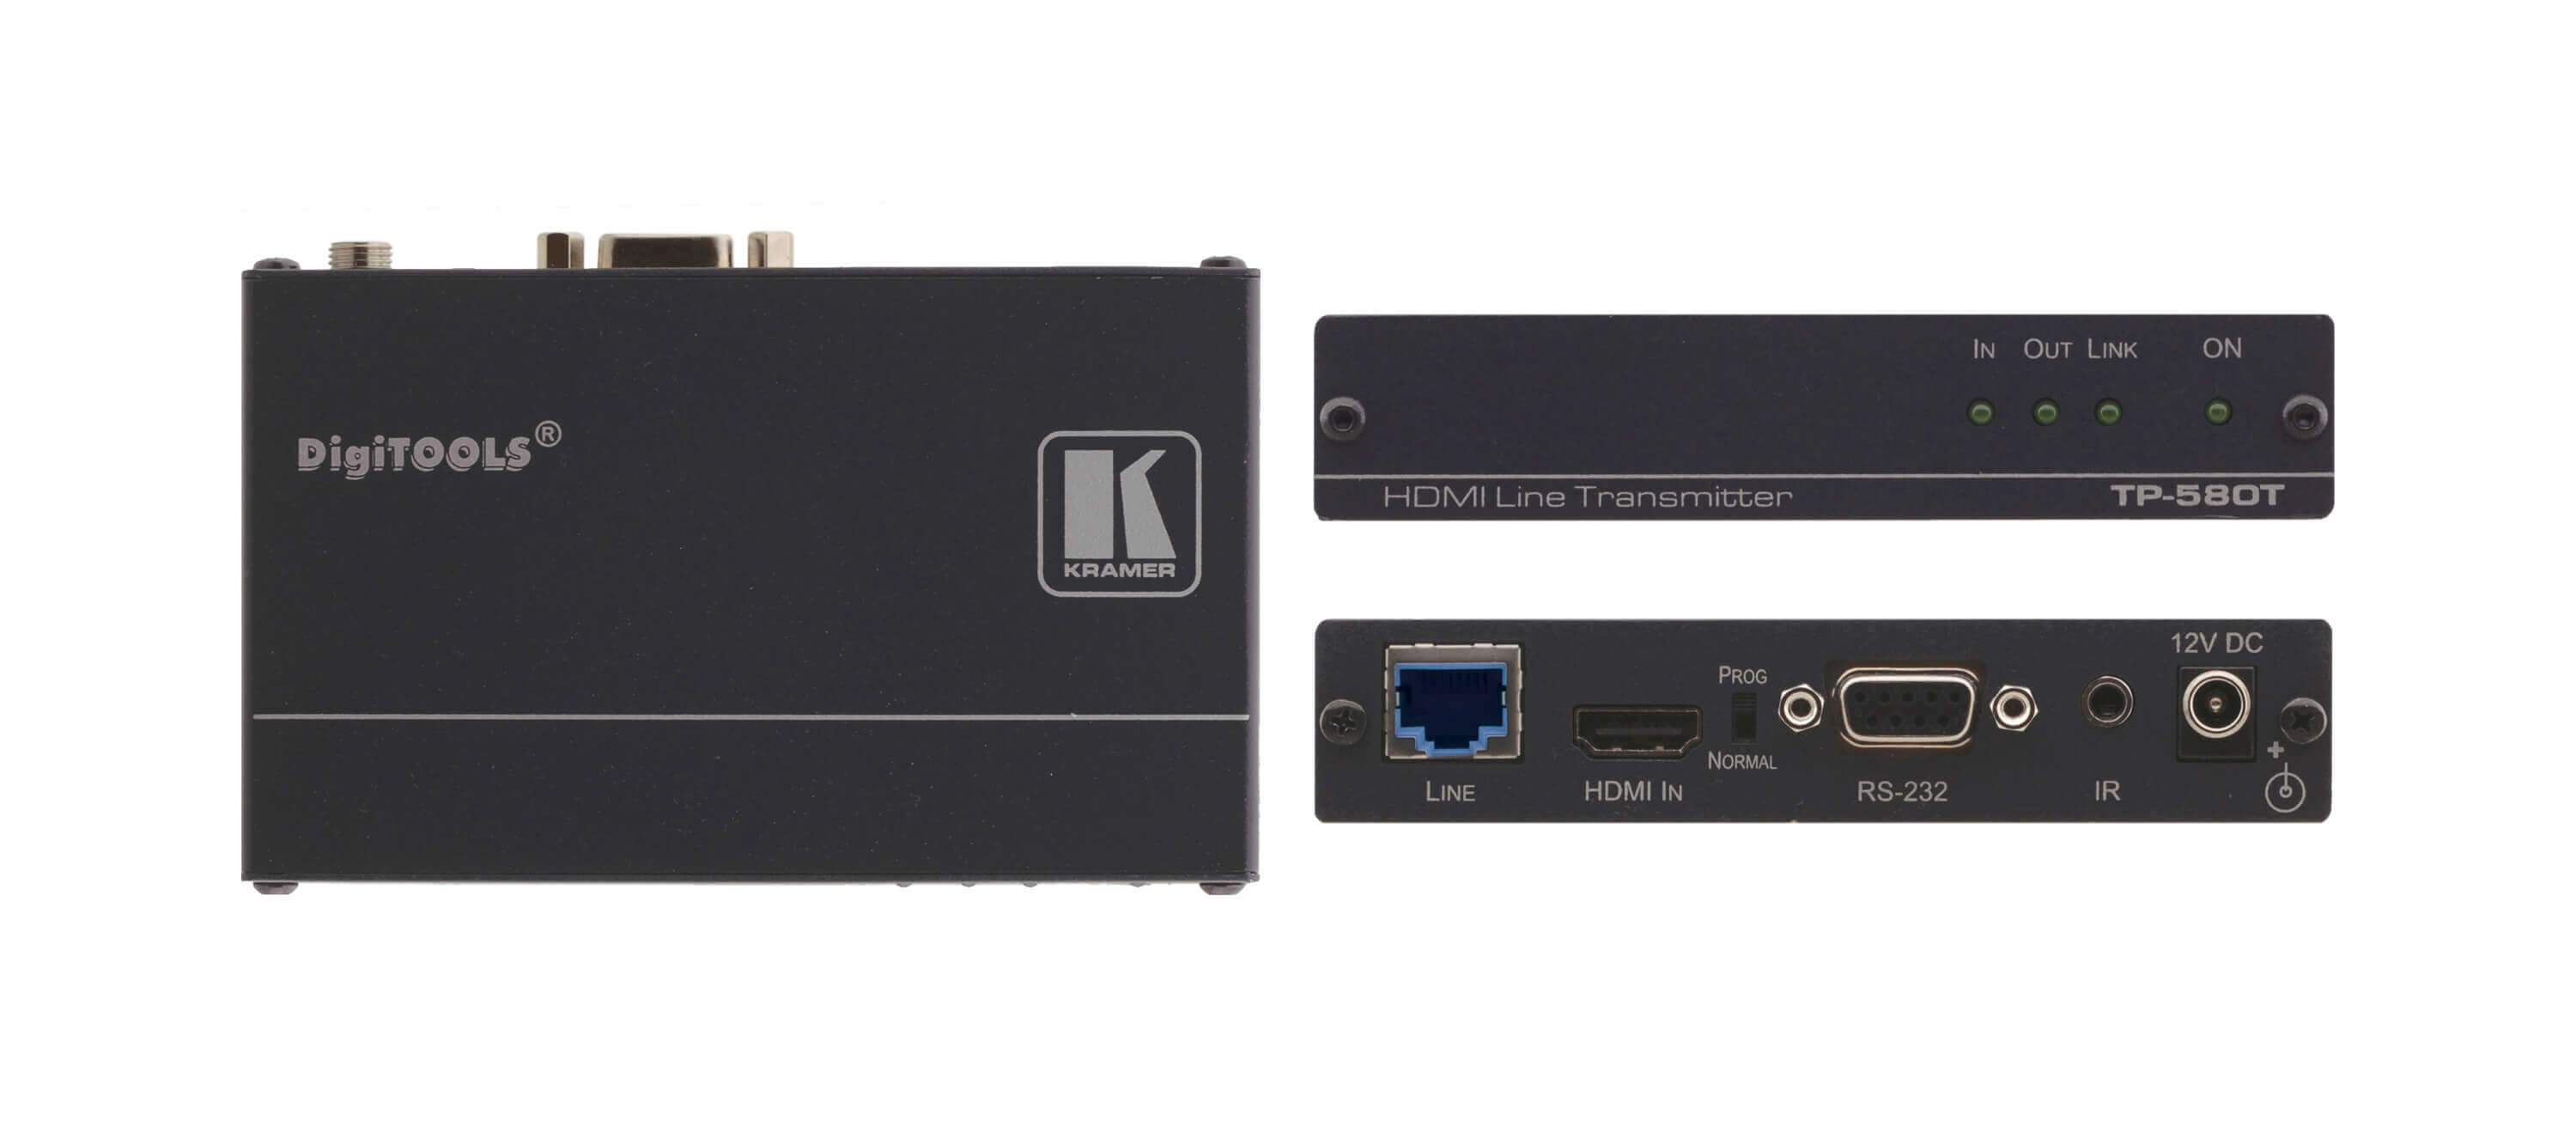 KRAMER TP-580T Extensor de par trenzado HDMI, bidireccional RS-232